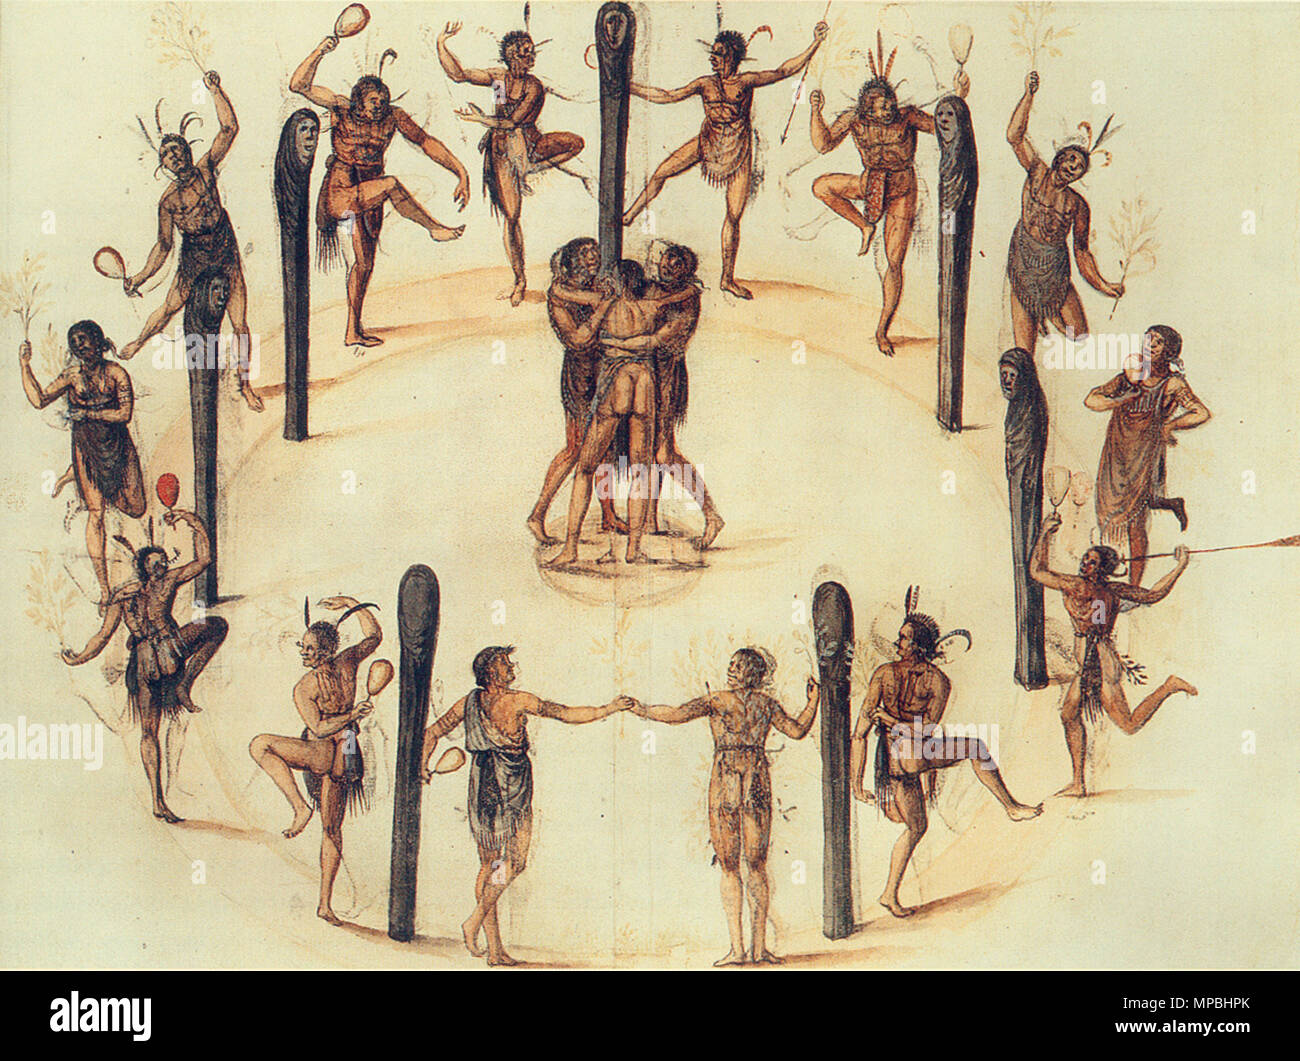 English: Dancing Secotan Indians in North Carolina. Watercolour painted by  John White in 1585. Deutsch: Tanz der Secotan-Indianer in North Carolina.  Aquarell von John White aus dem Jahr 1585. 1585. John